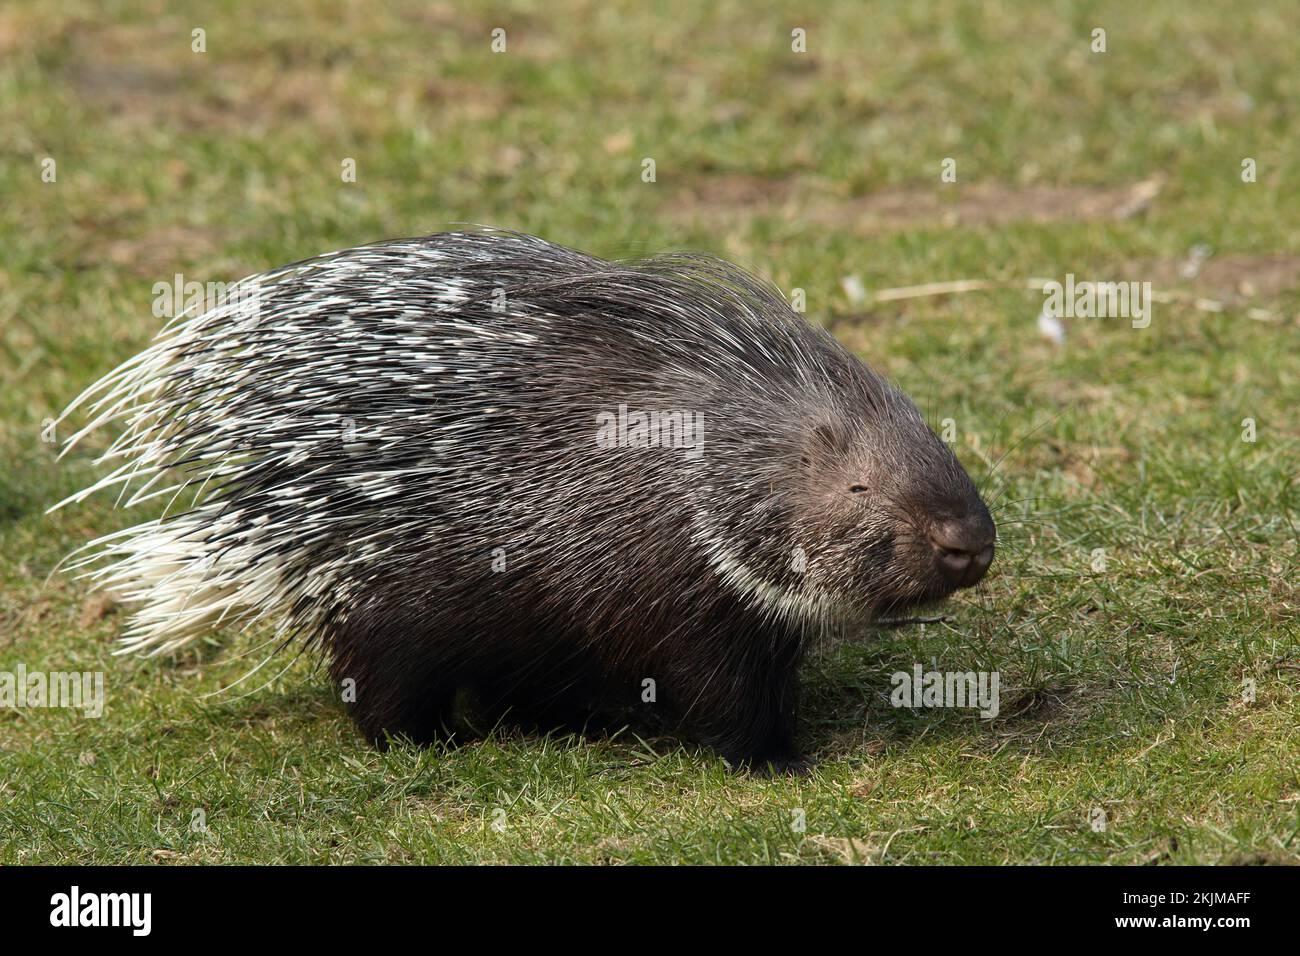 Crested porcupine (Hystrix cristata), captive Stock Photo